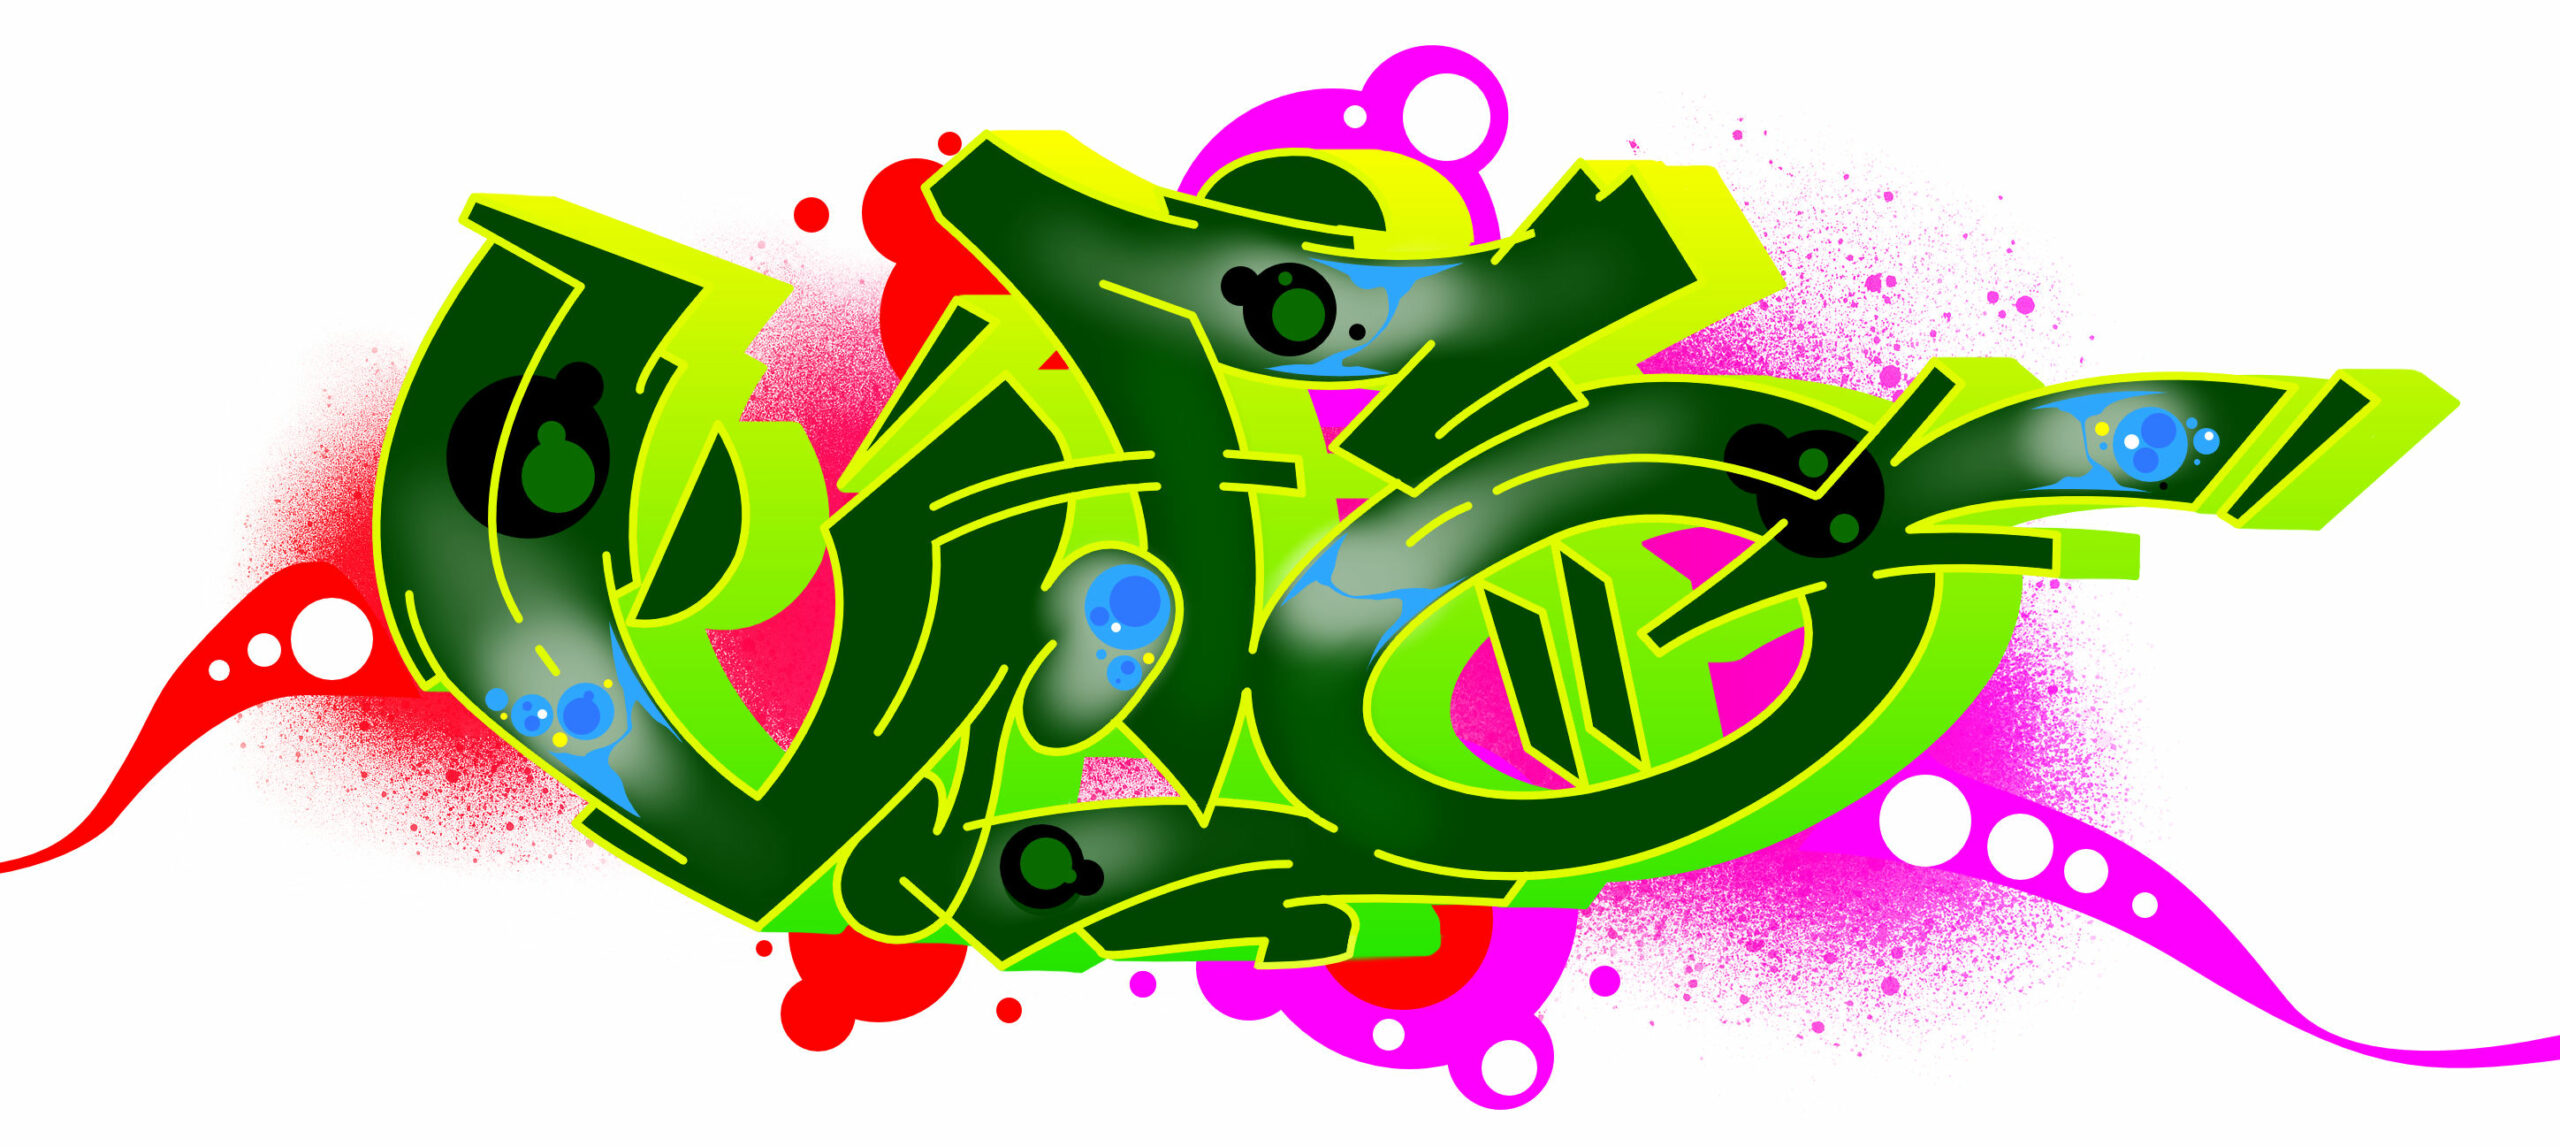 “Ufo” als Graffiti in 12 Schritten zeichen